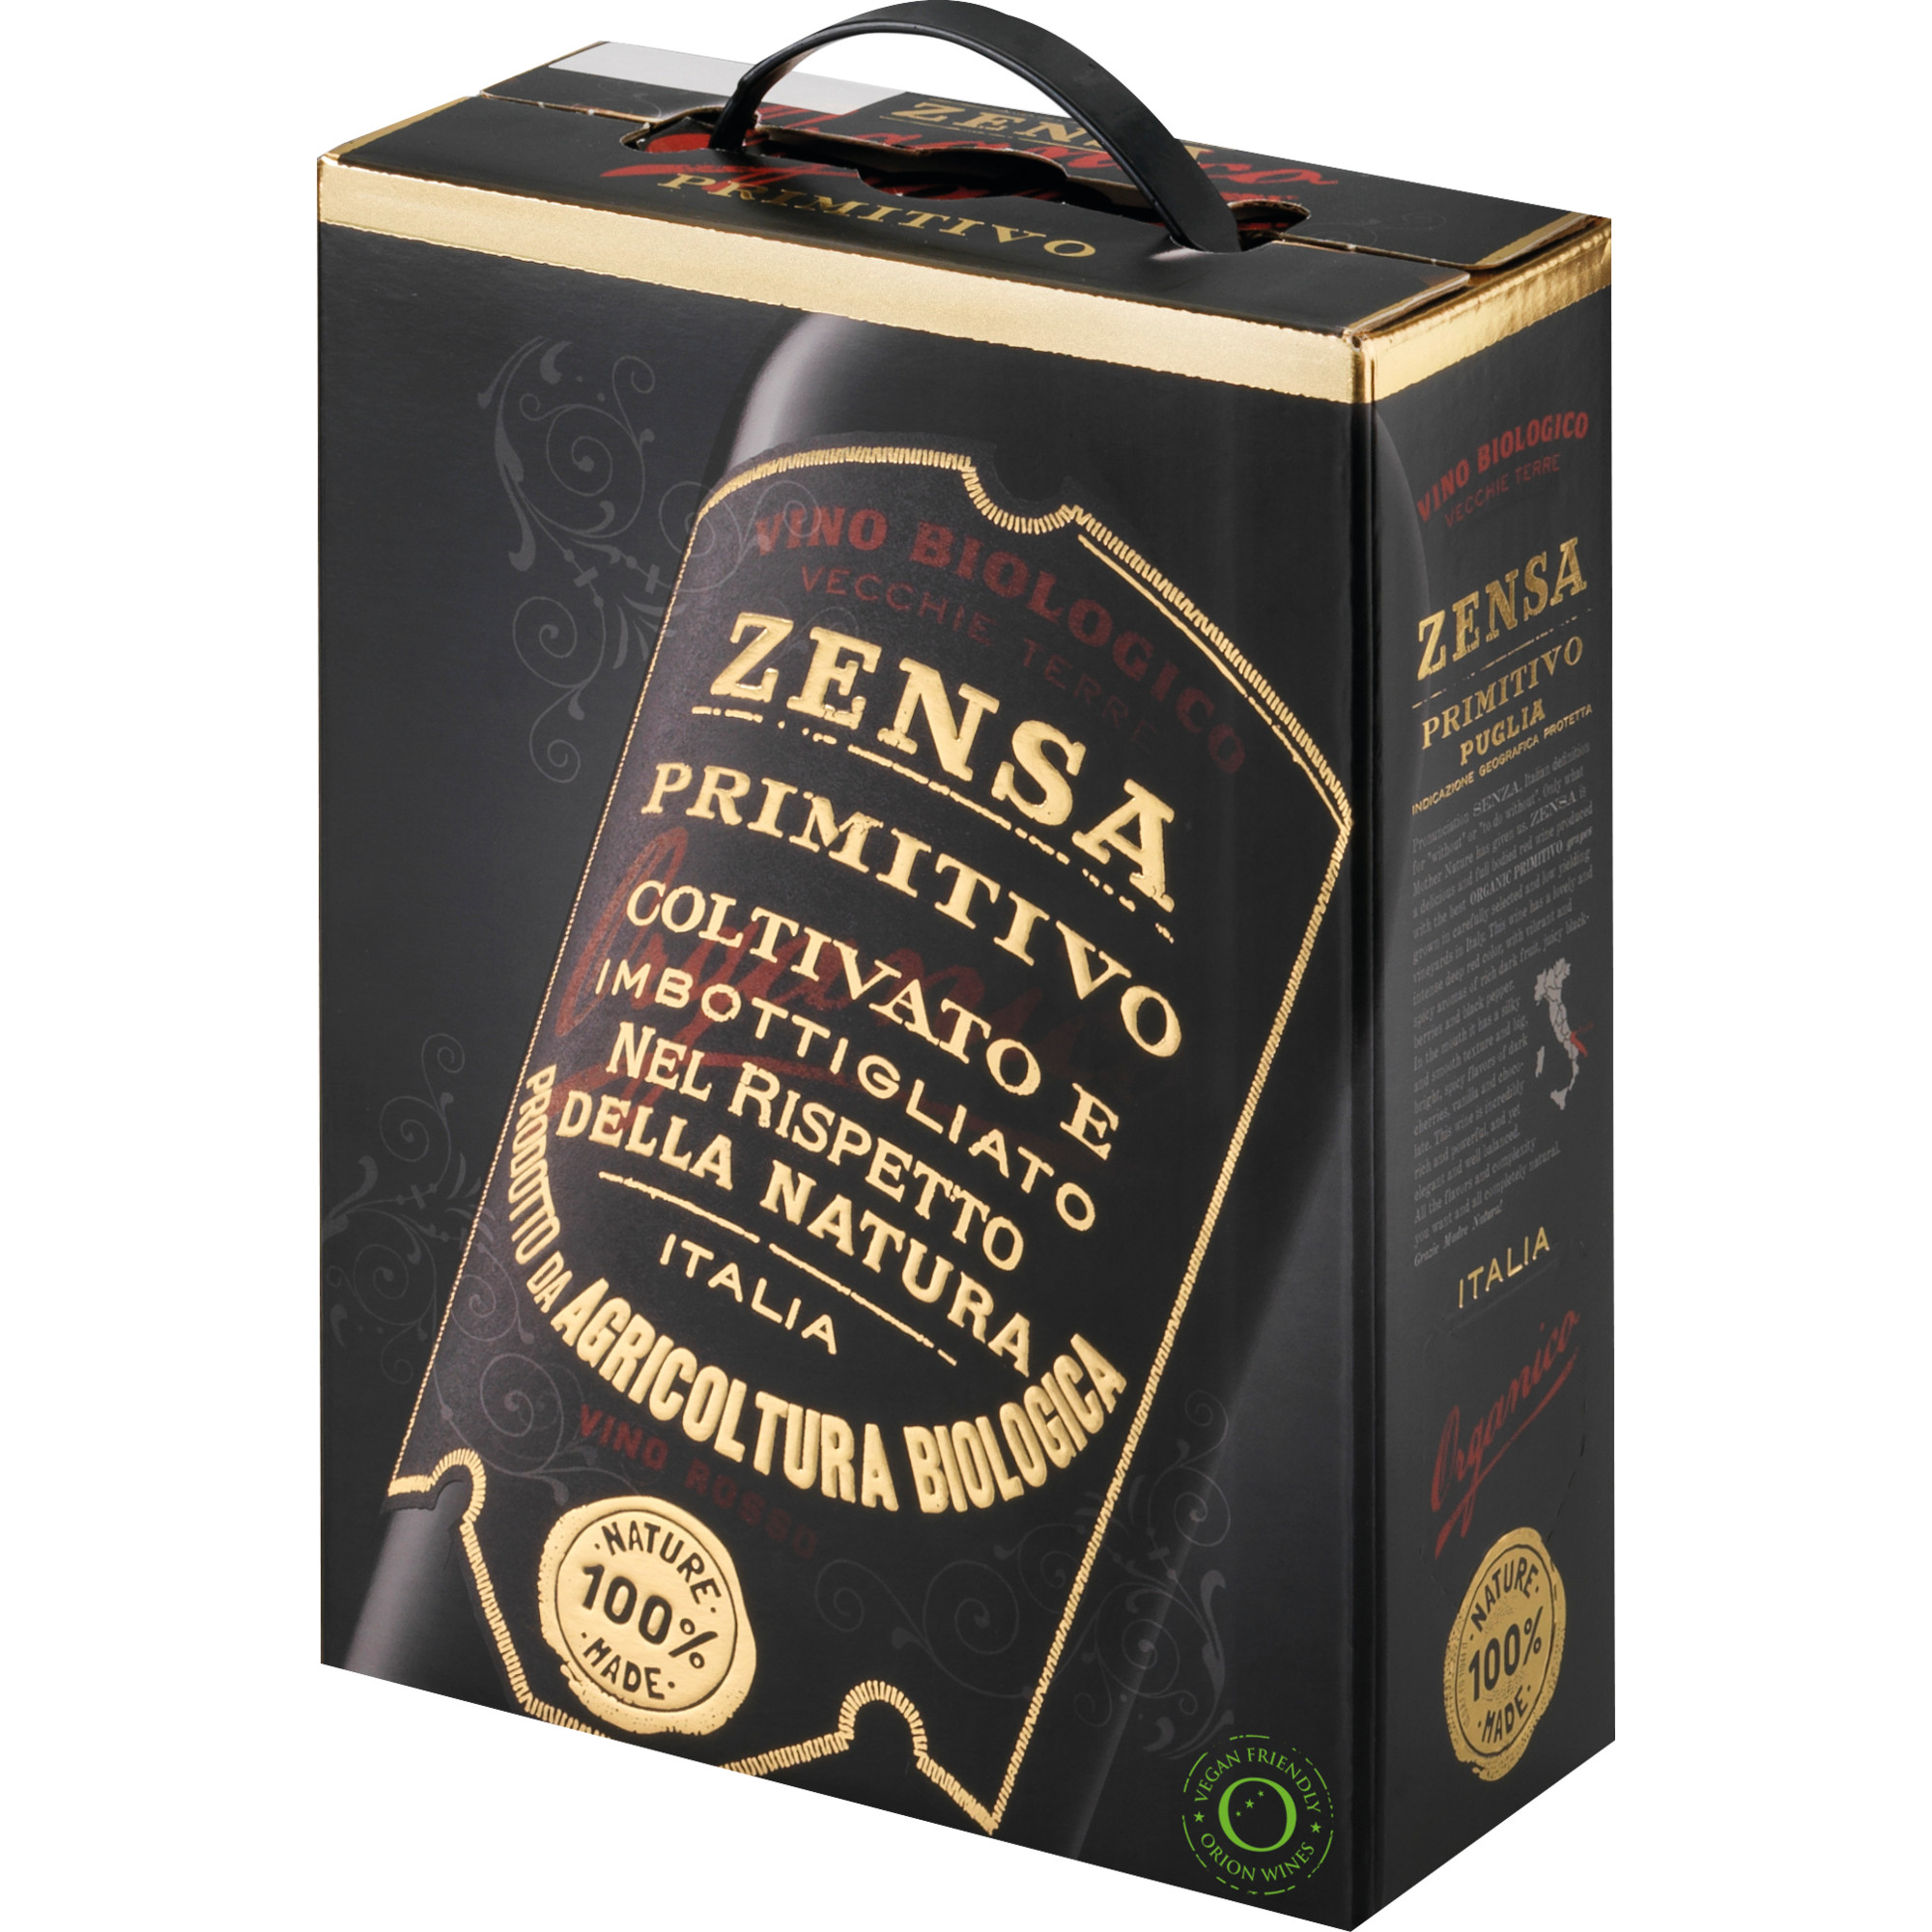 Zensa Primitivo, Puglia IGP, Bag in Box 3 L, Apulien, 2022, Rotwein  Rotwein Hawesko